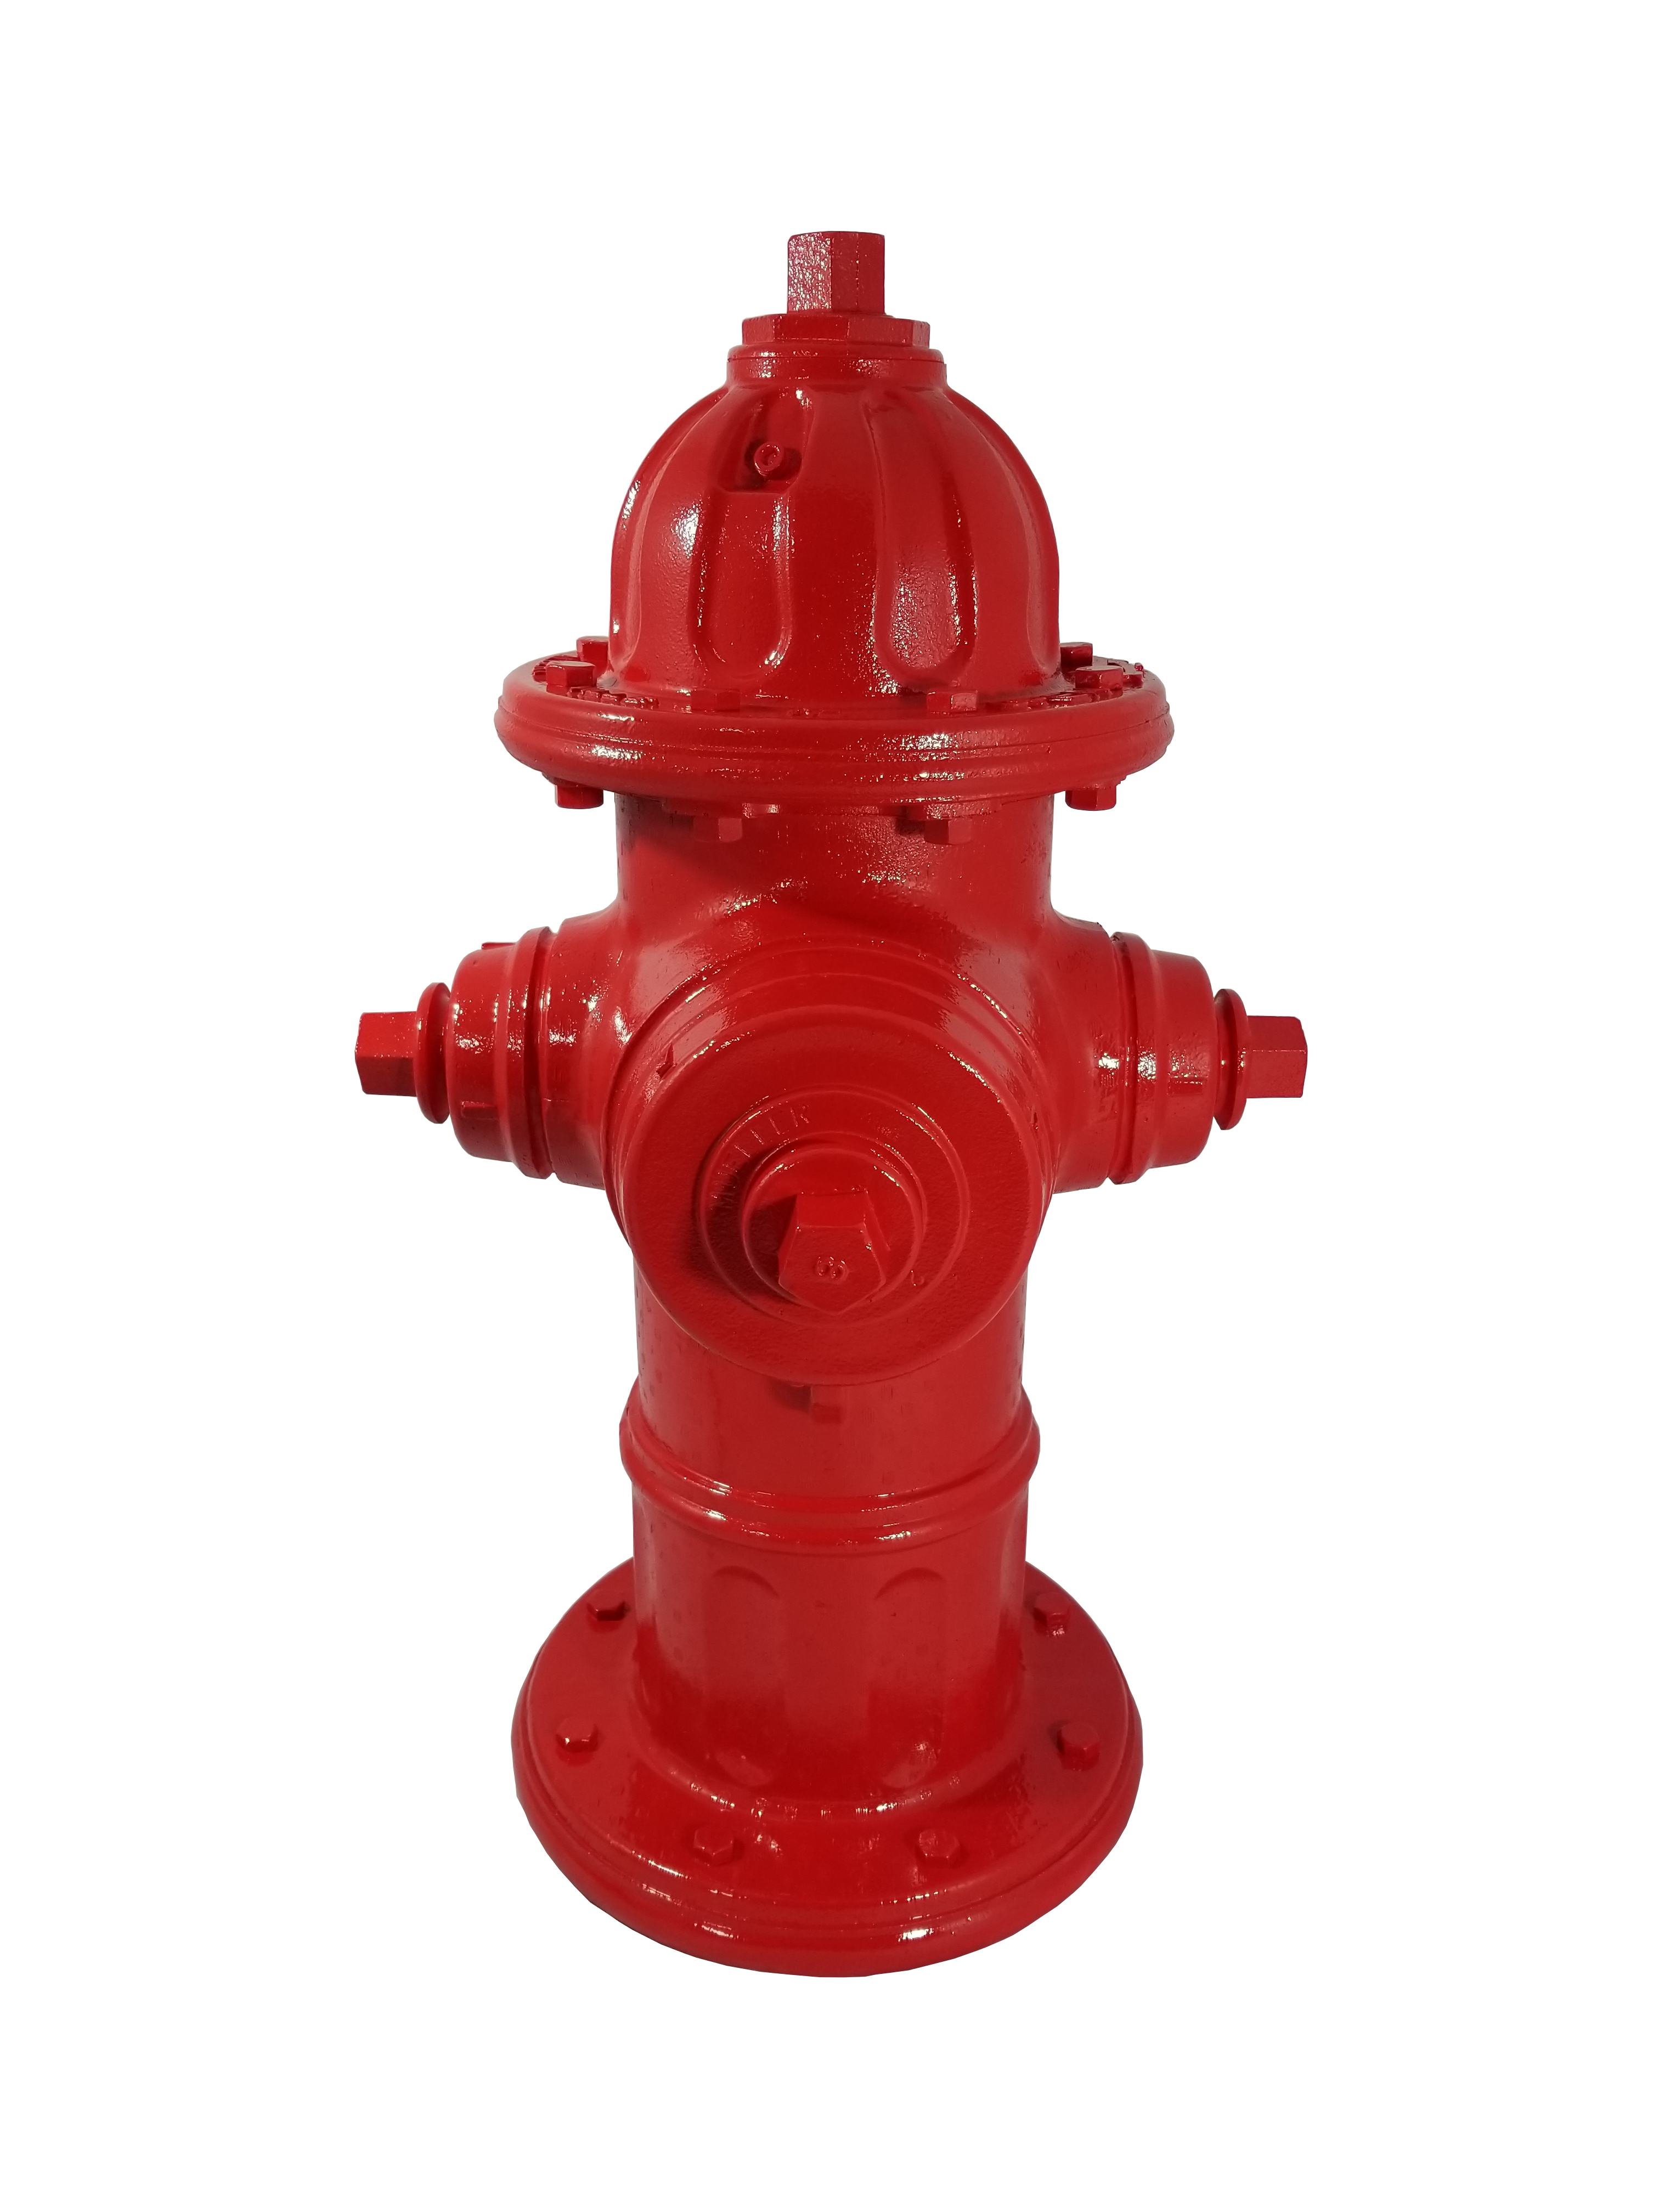 Replica Mueller Centurion Replica Fire Hydrant - Icon Poly